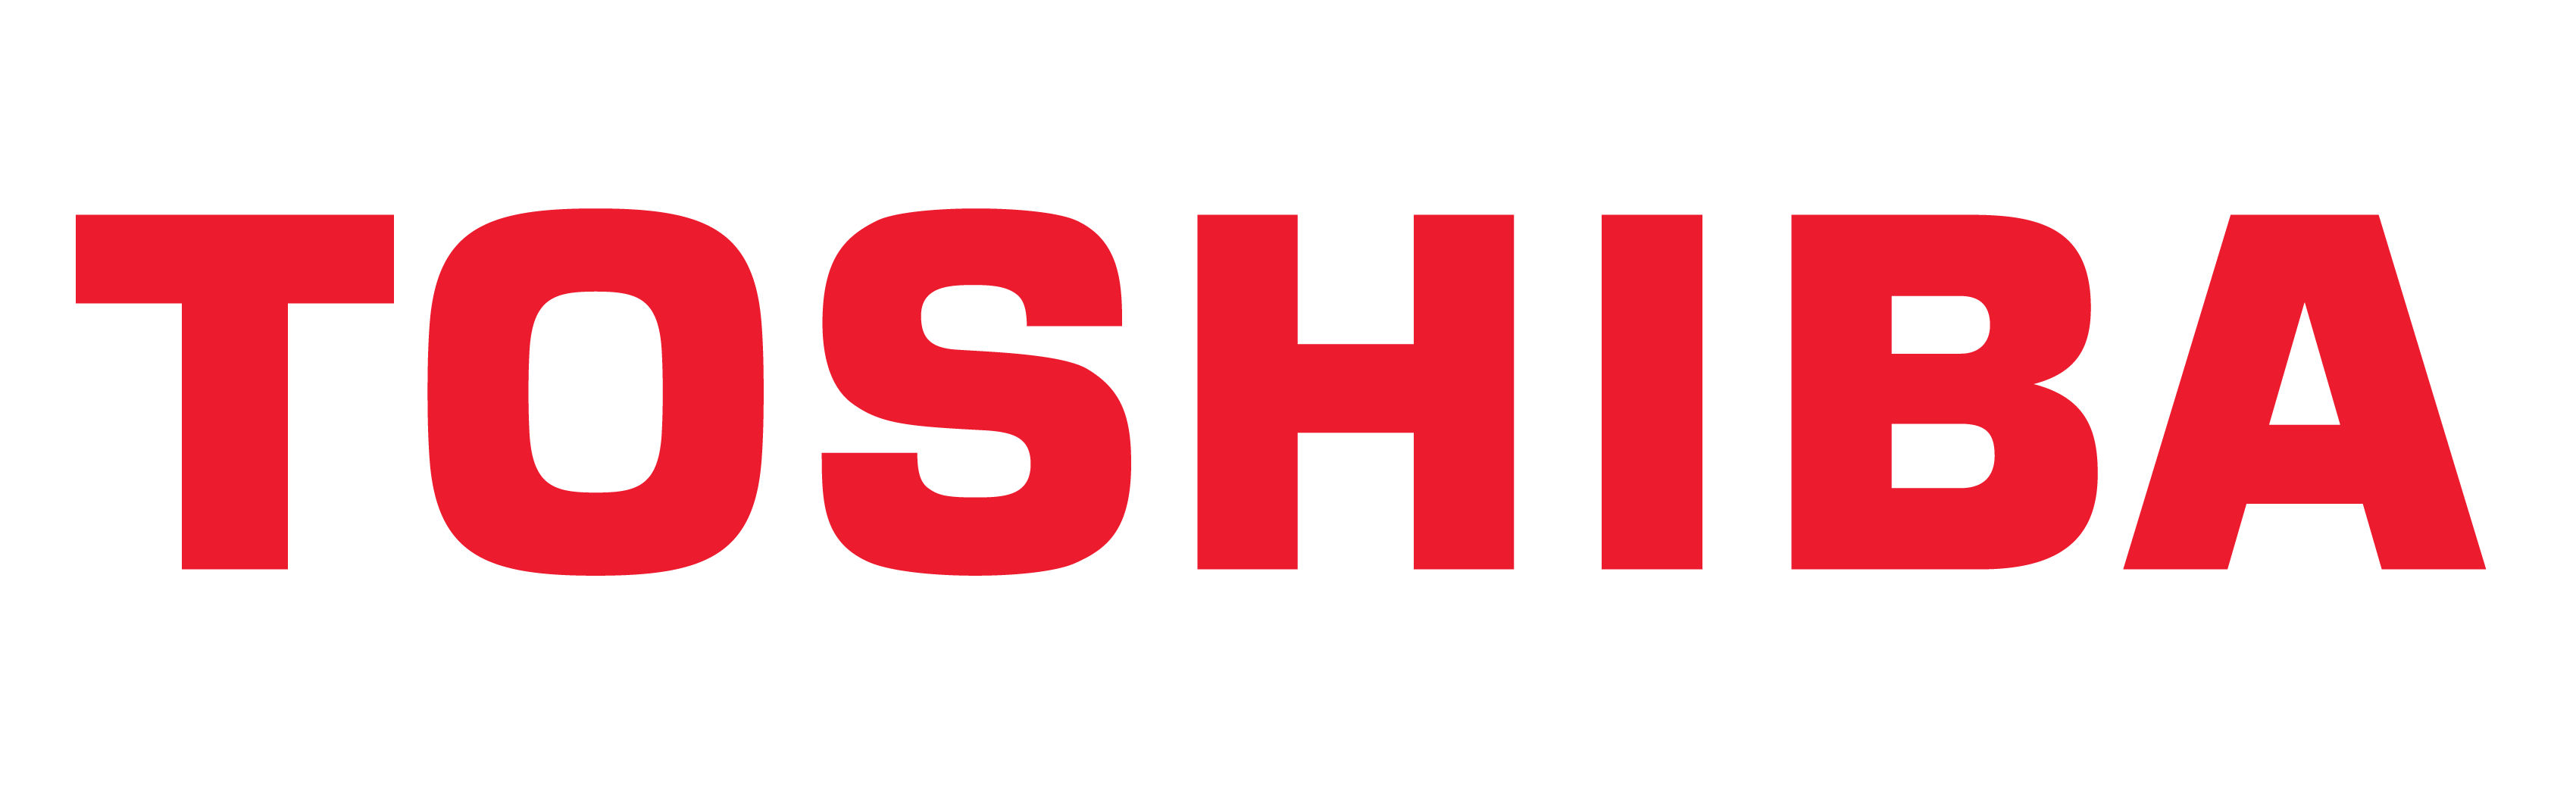 Logotipo da Toshiba, símbolo da Toshiba, significado, história e evolução